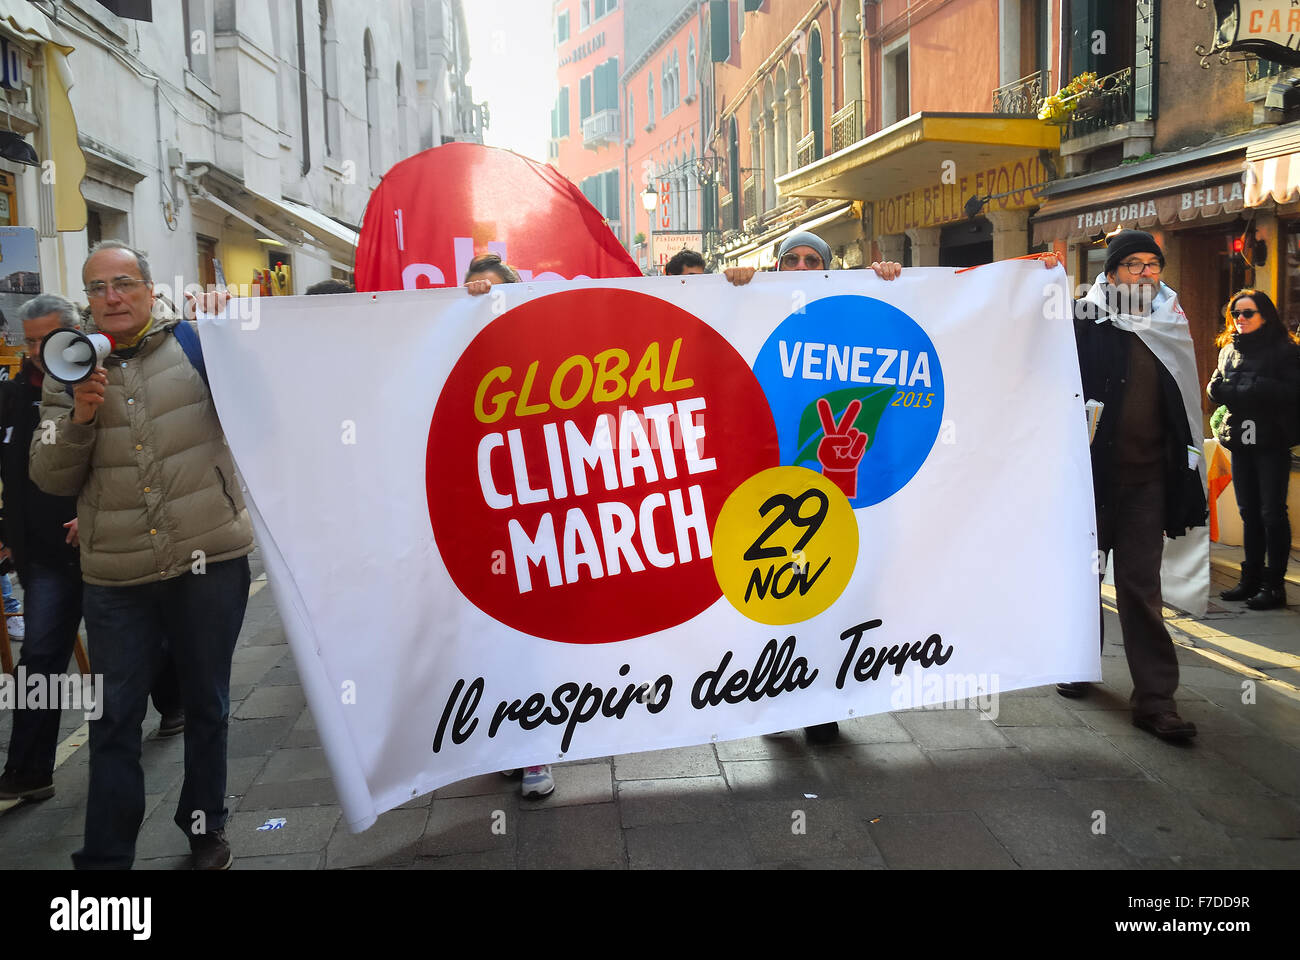 Venecia, Italia. El 29 de noviembre, 2015. El clima mundial de Marzo - Ferdinando Piezzi Crédito: Ferdinando Piezzi/Alamy Live News Foto de stock